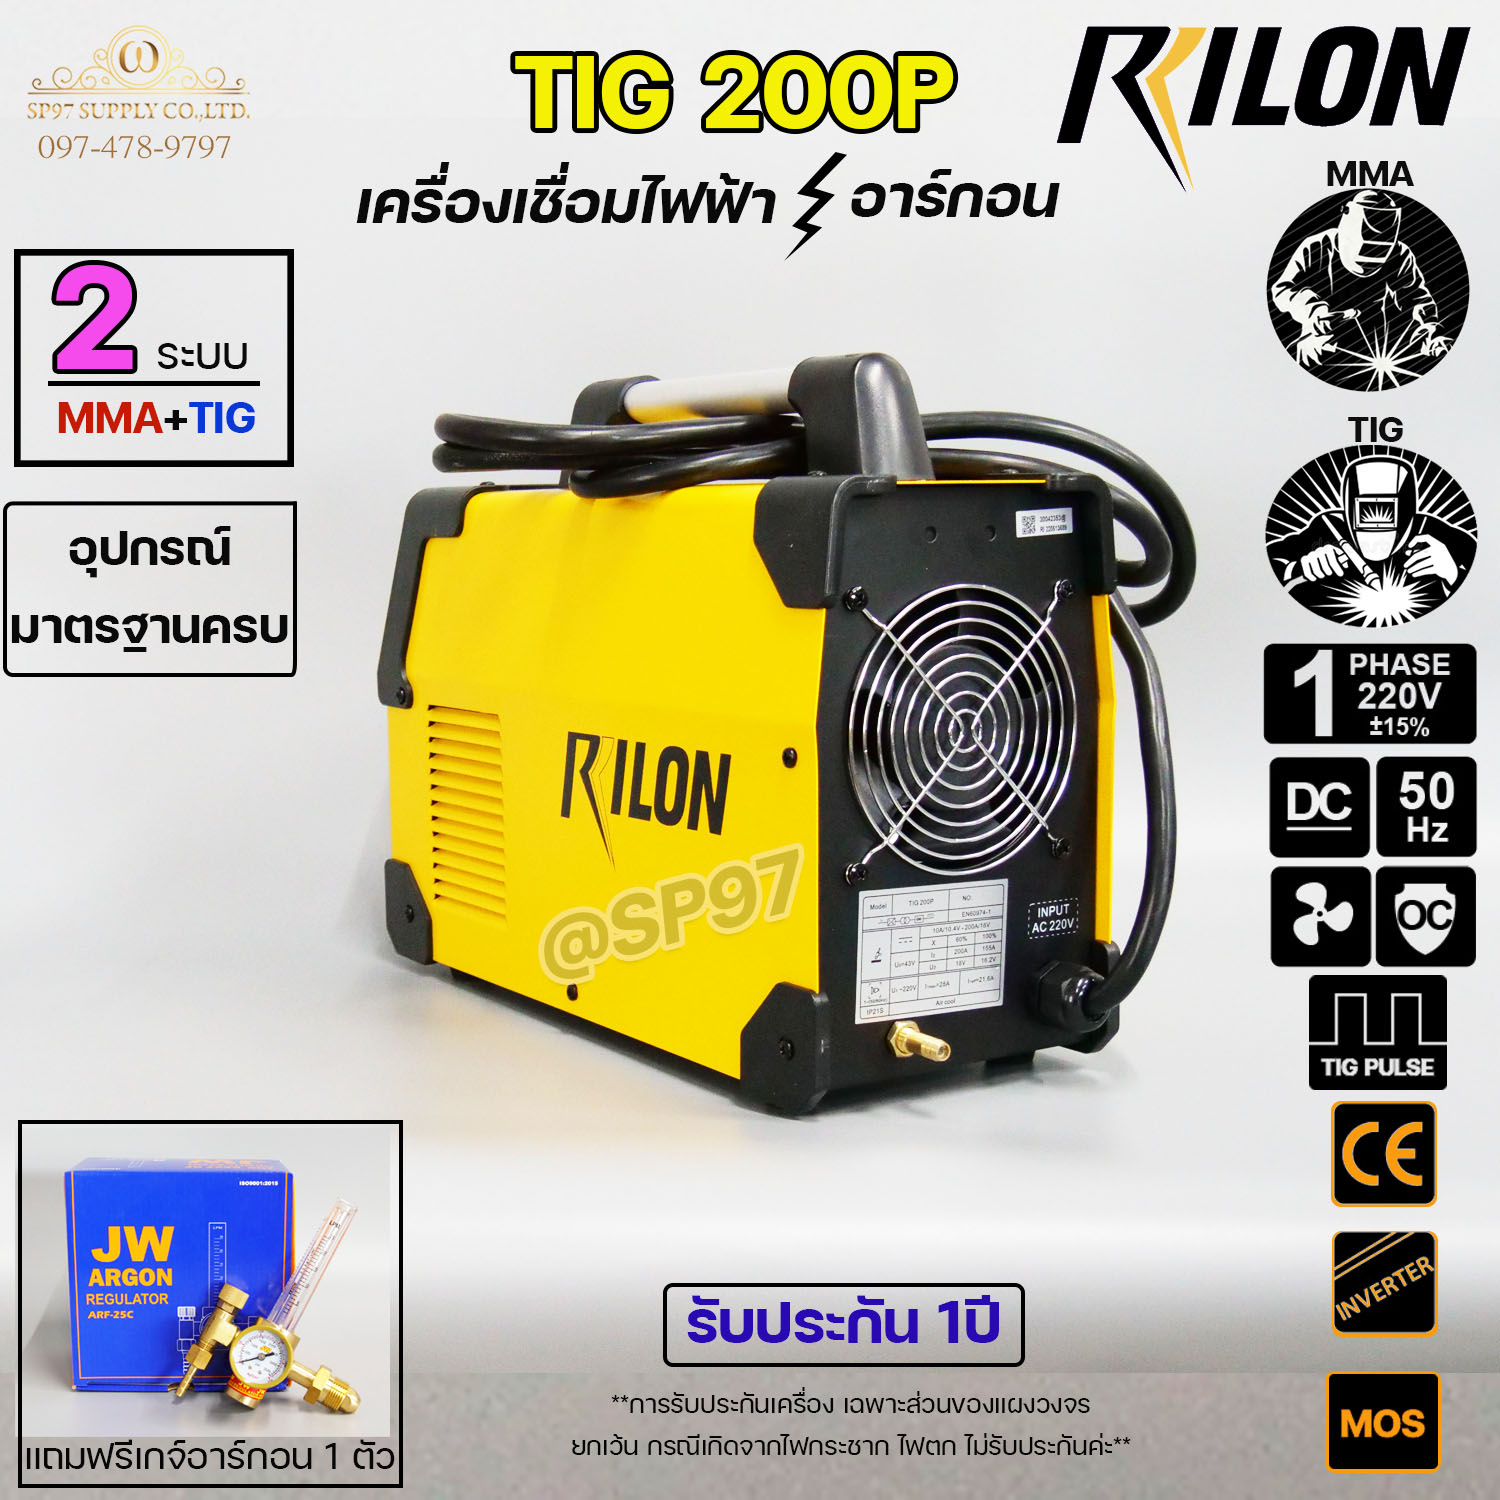 ตู้เชื่อม RILON TIG 200P